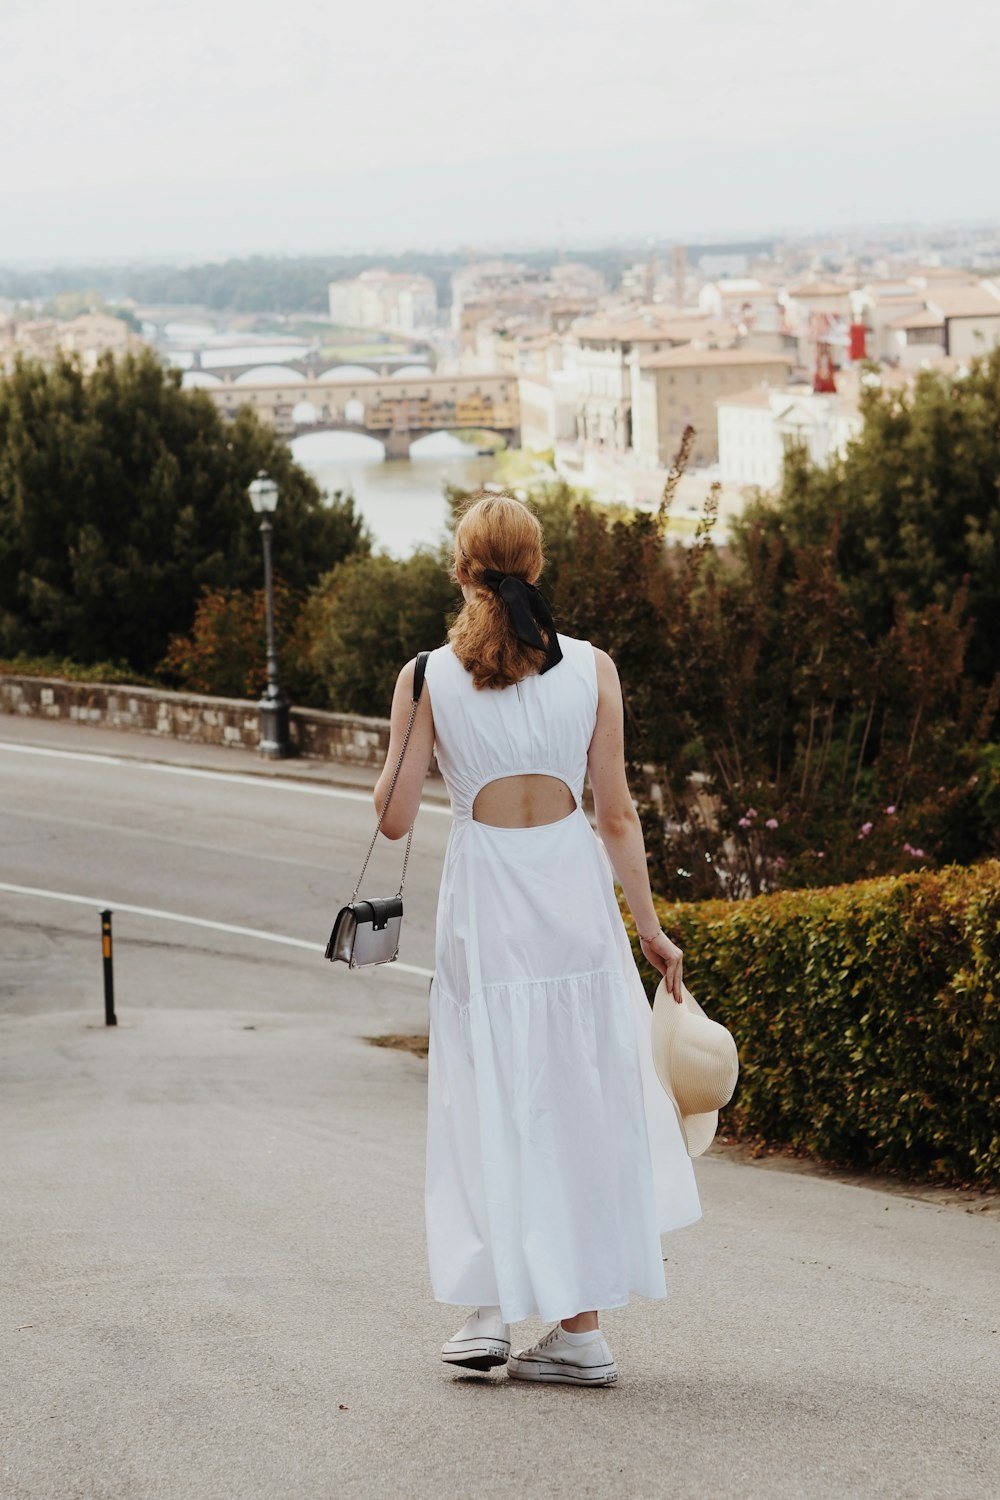 a woman in a white dress walking down a street